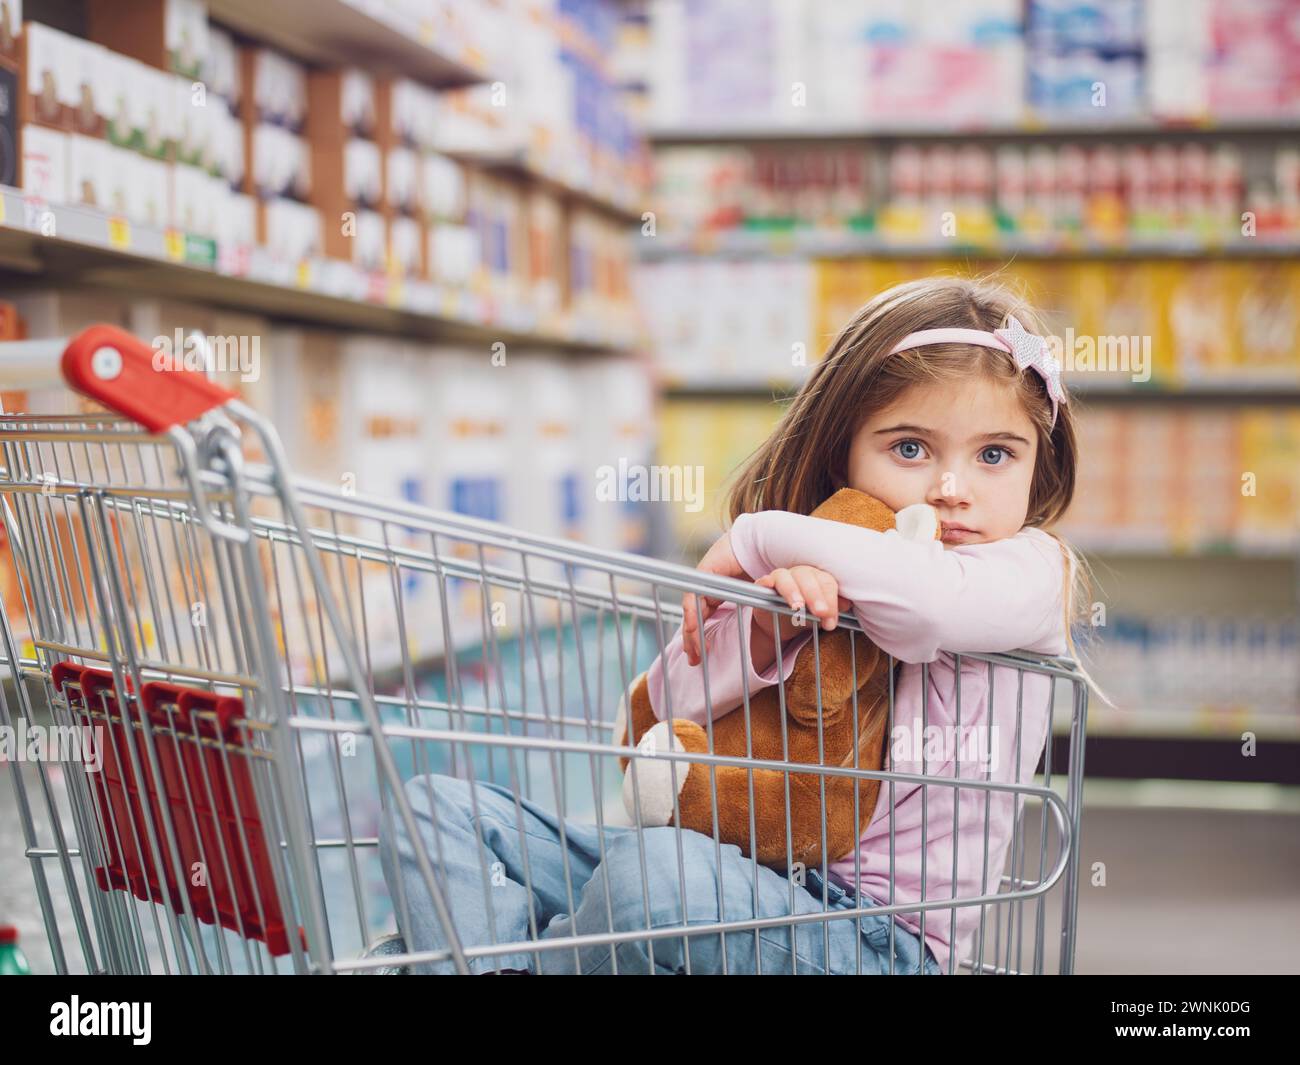 Porträt eines süßen kleinen Mädchens im Supermarkt, sie sitzt in einem Einkaufswagen und umarmt ihren Teddybären Stockfoto